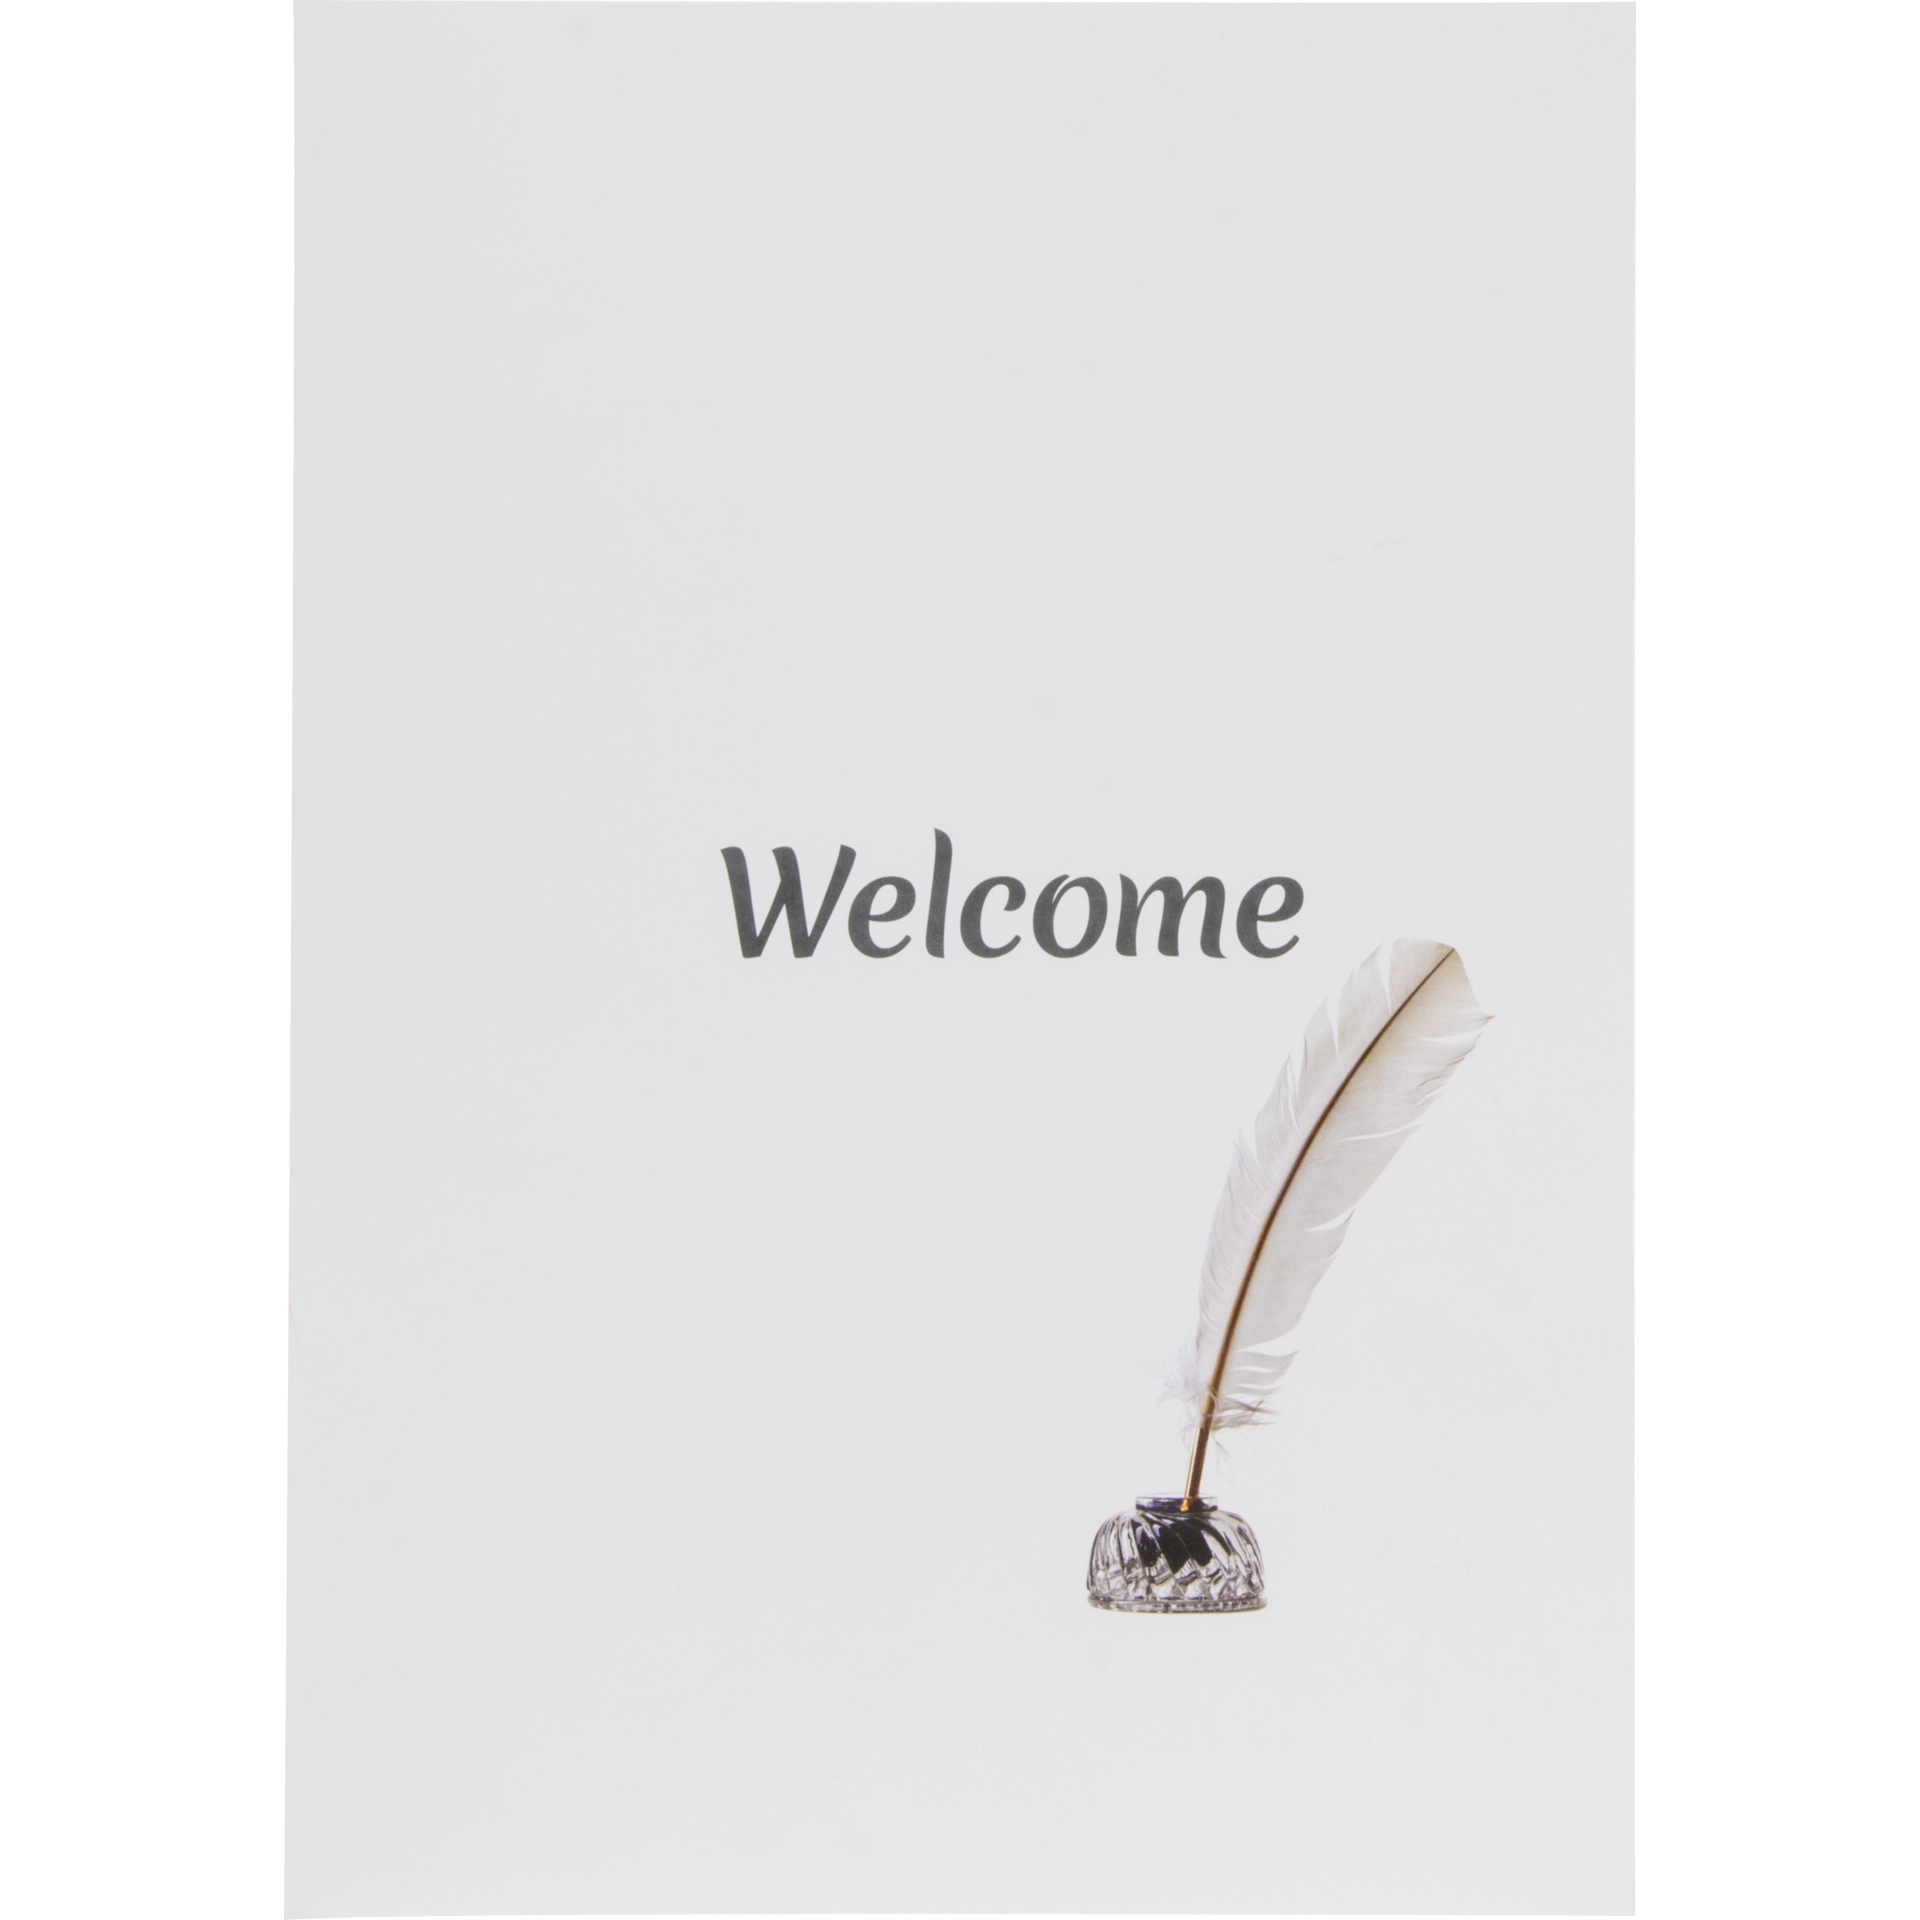 Hotelschreibmappe | Welcome Karton 300 g/m² | weiß matt 22x30,5 cm 